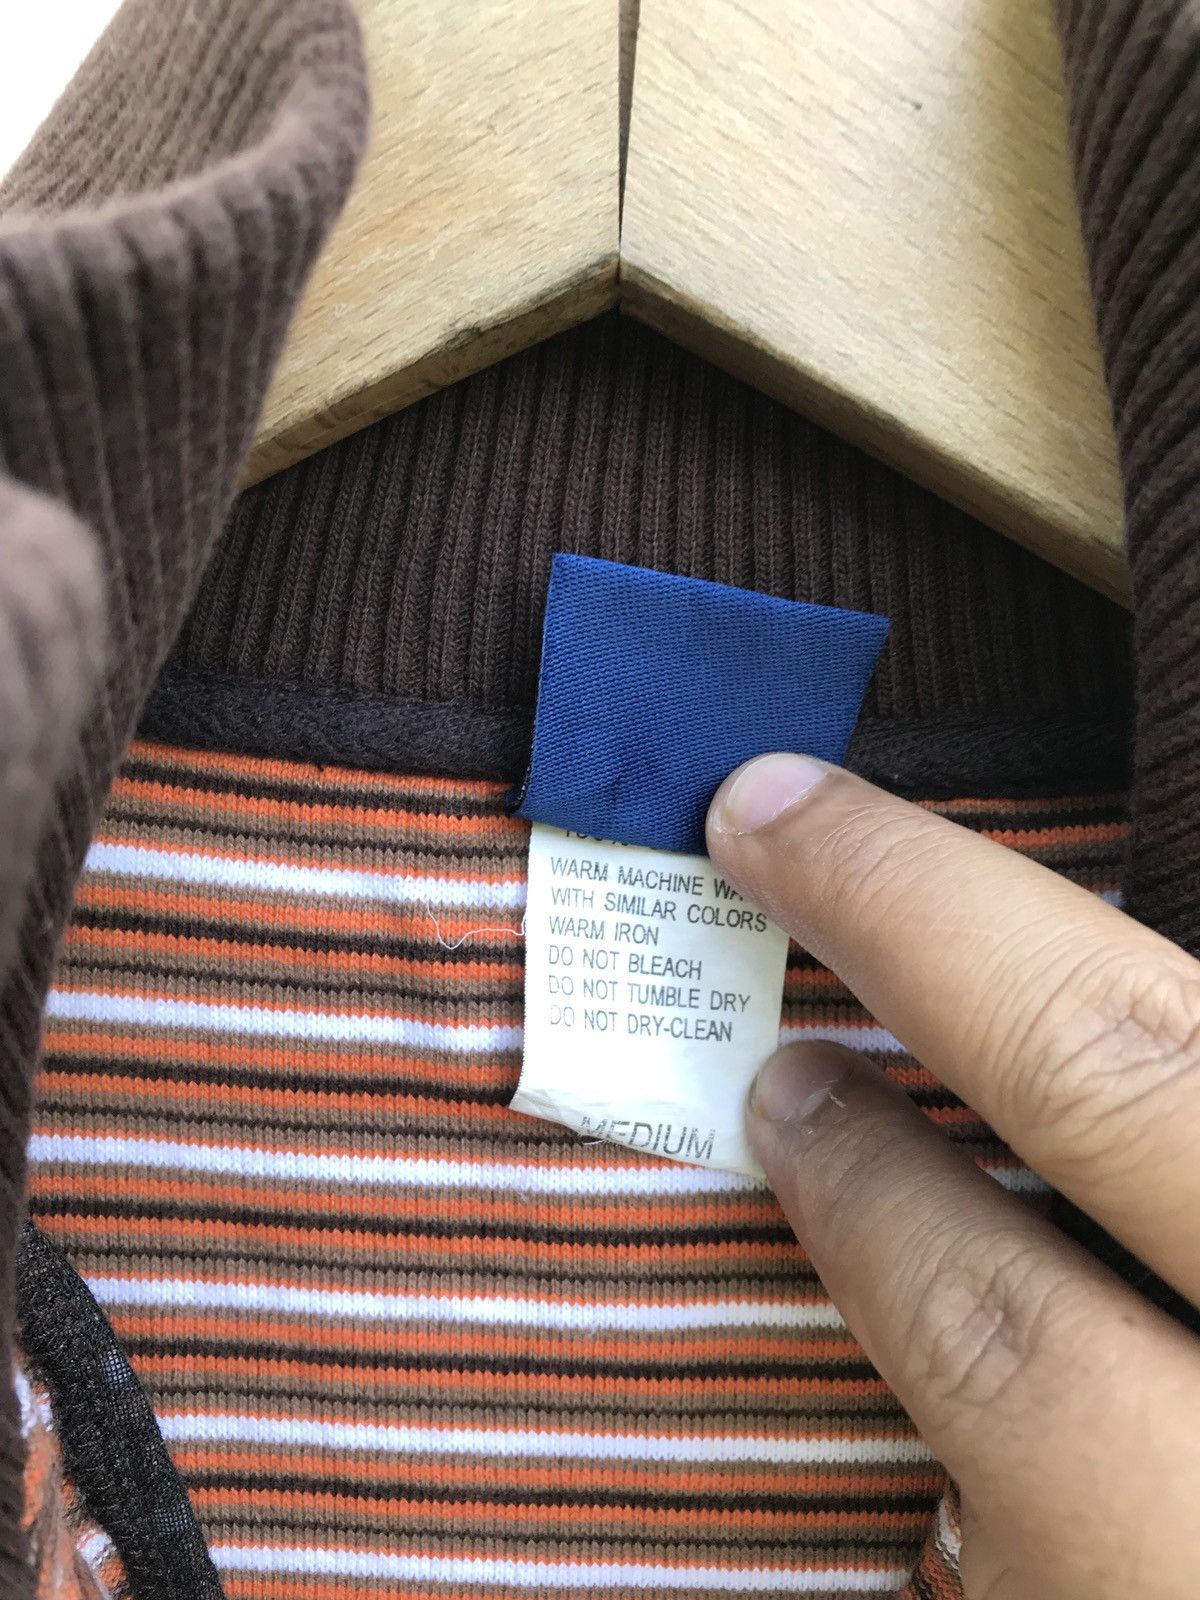 Hang Ten Hang Ten Striped Zipper Sweater Size US M / EU 48-50 / 2 - 4 Thumbnail